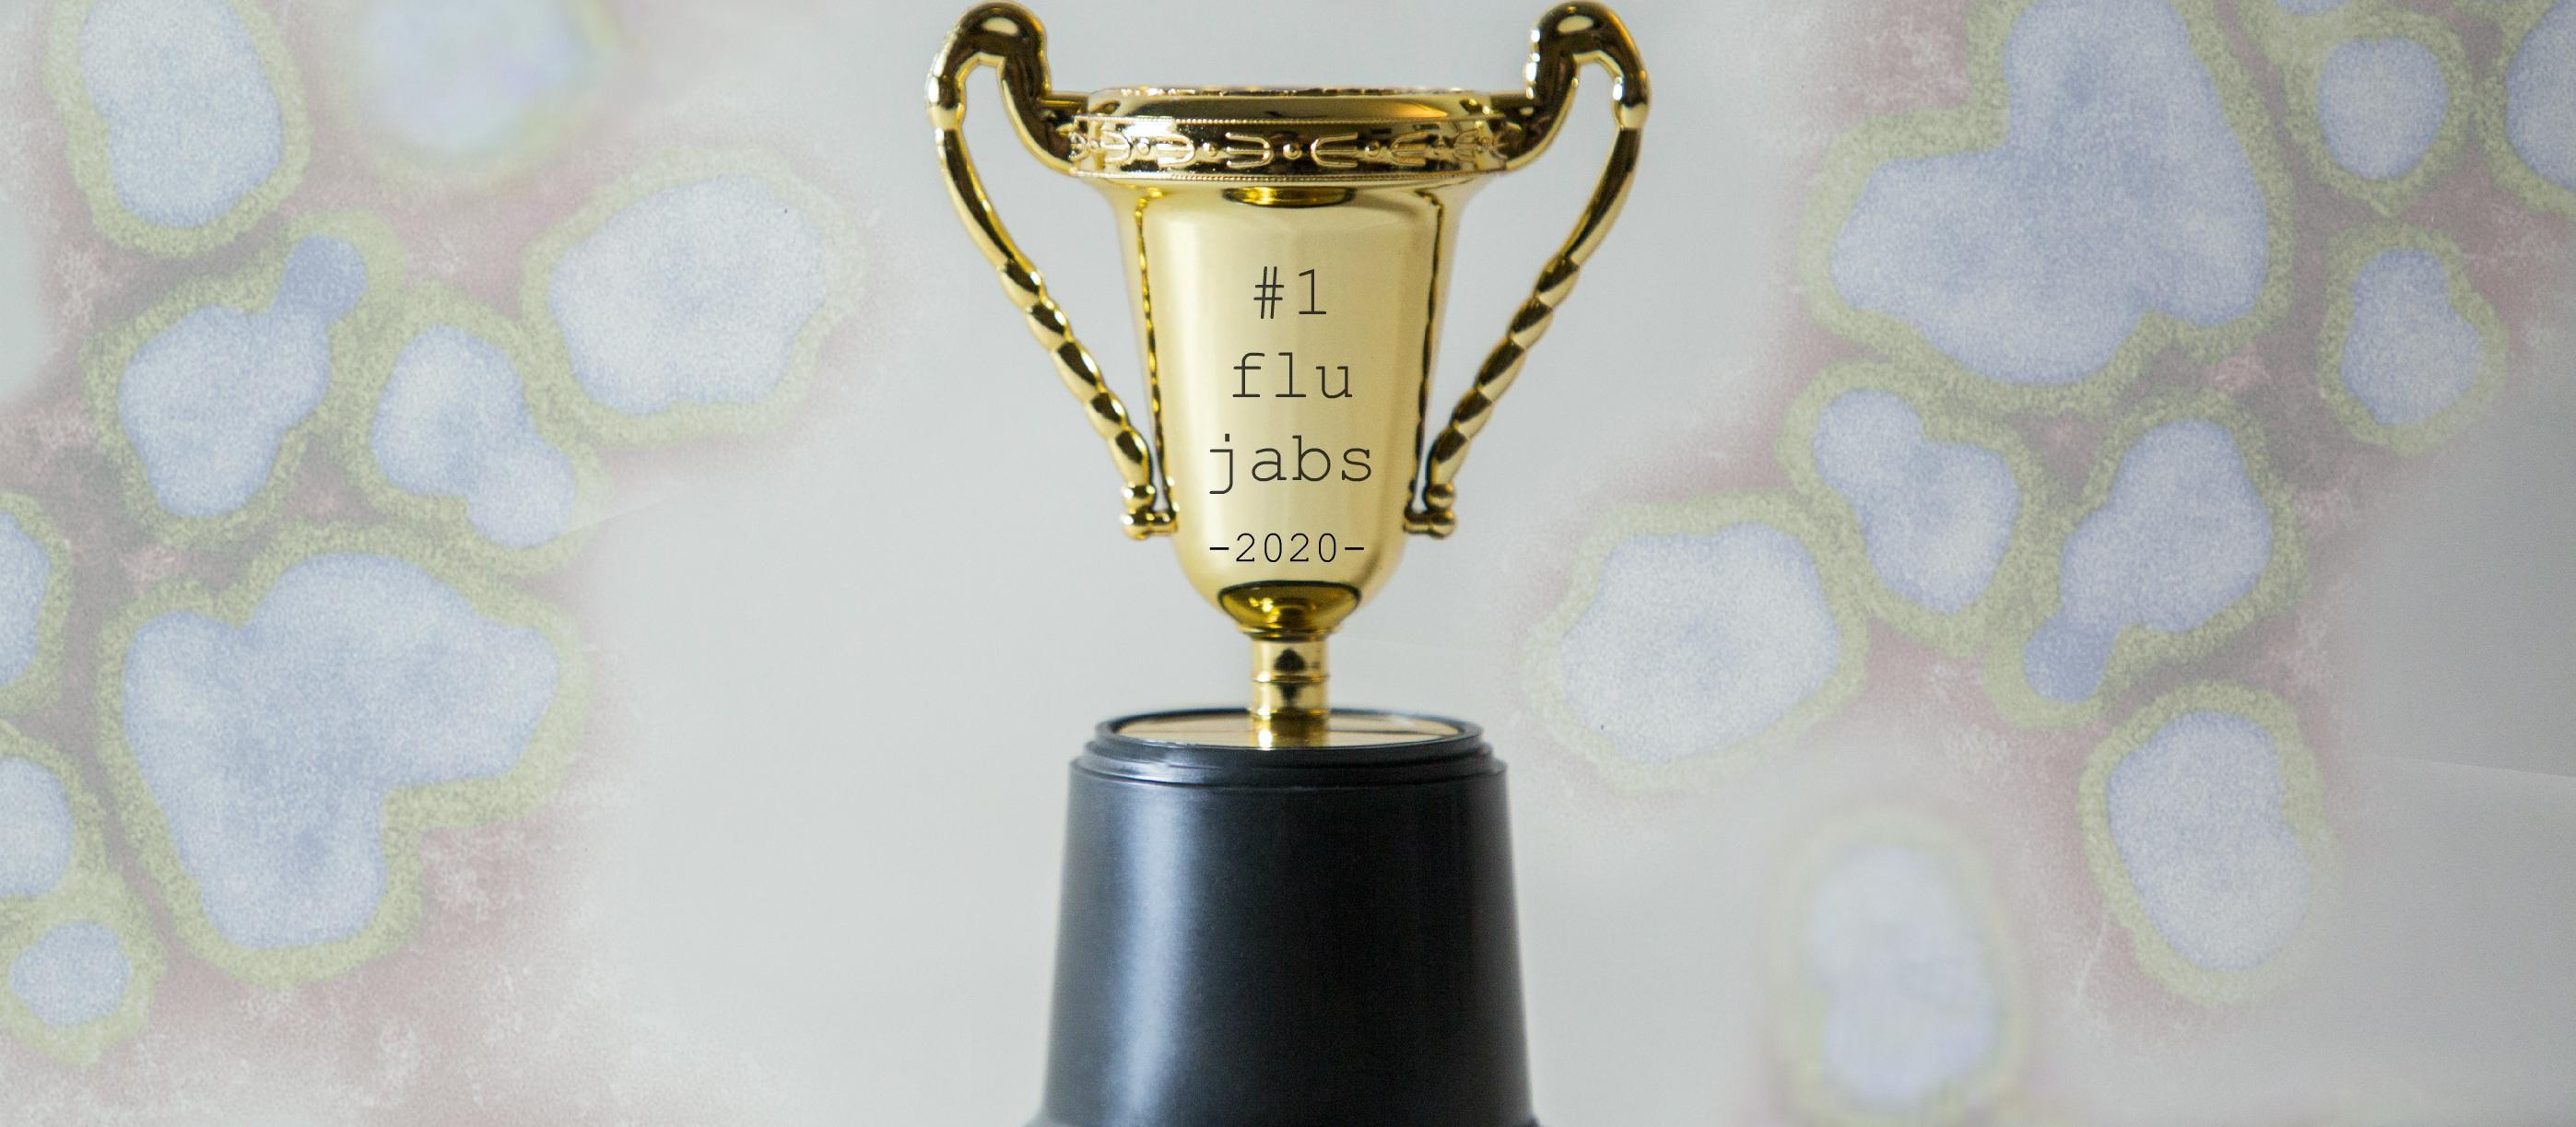 Flu jab trophy